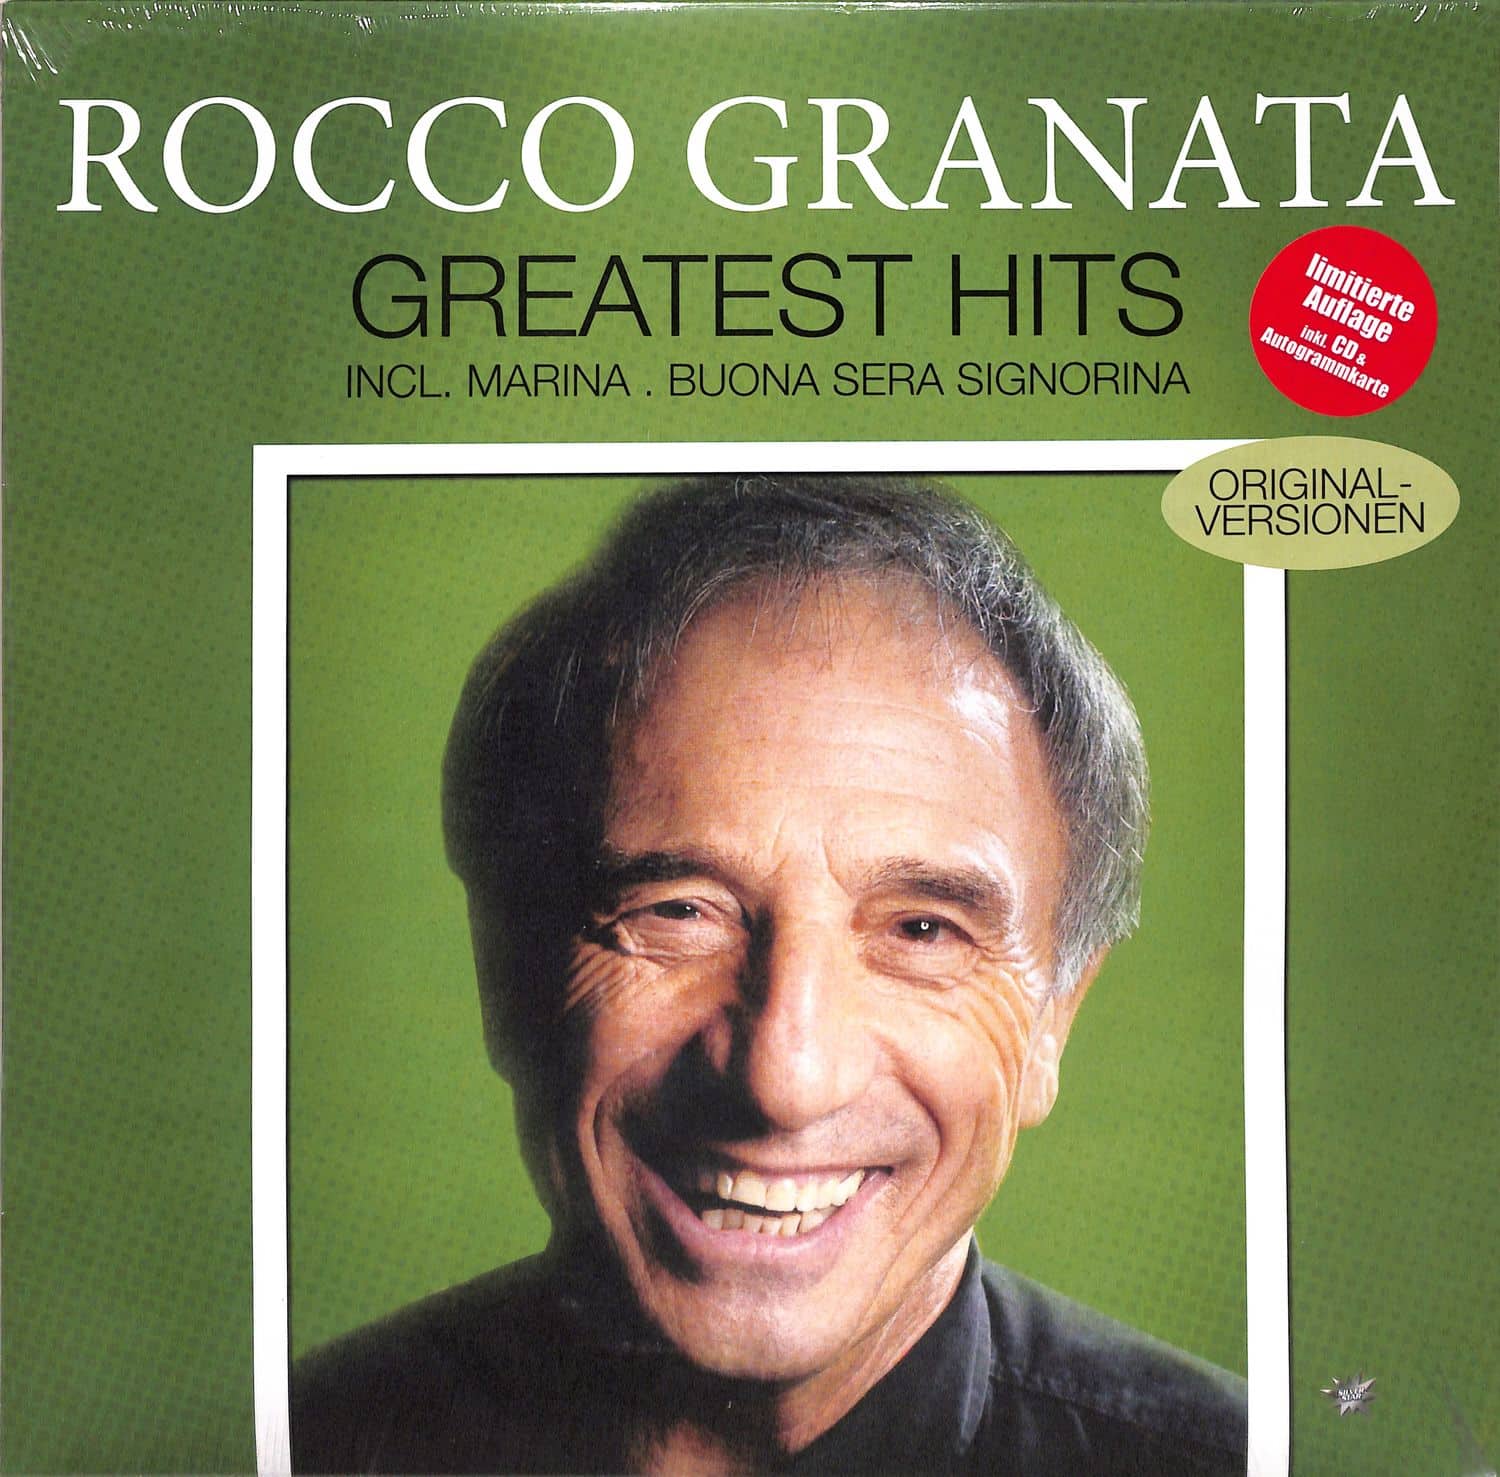 Rocco Granata - GREATEST HITS 